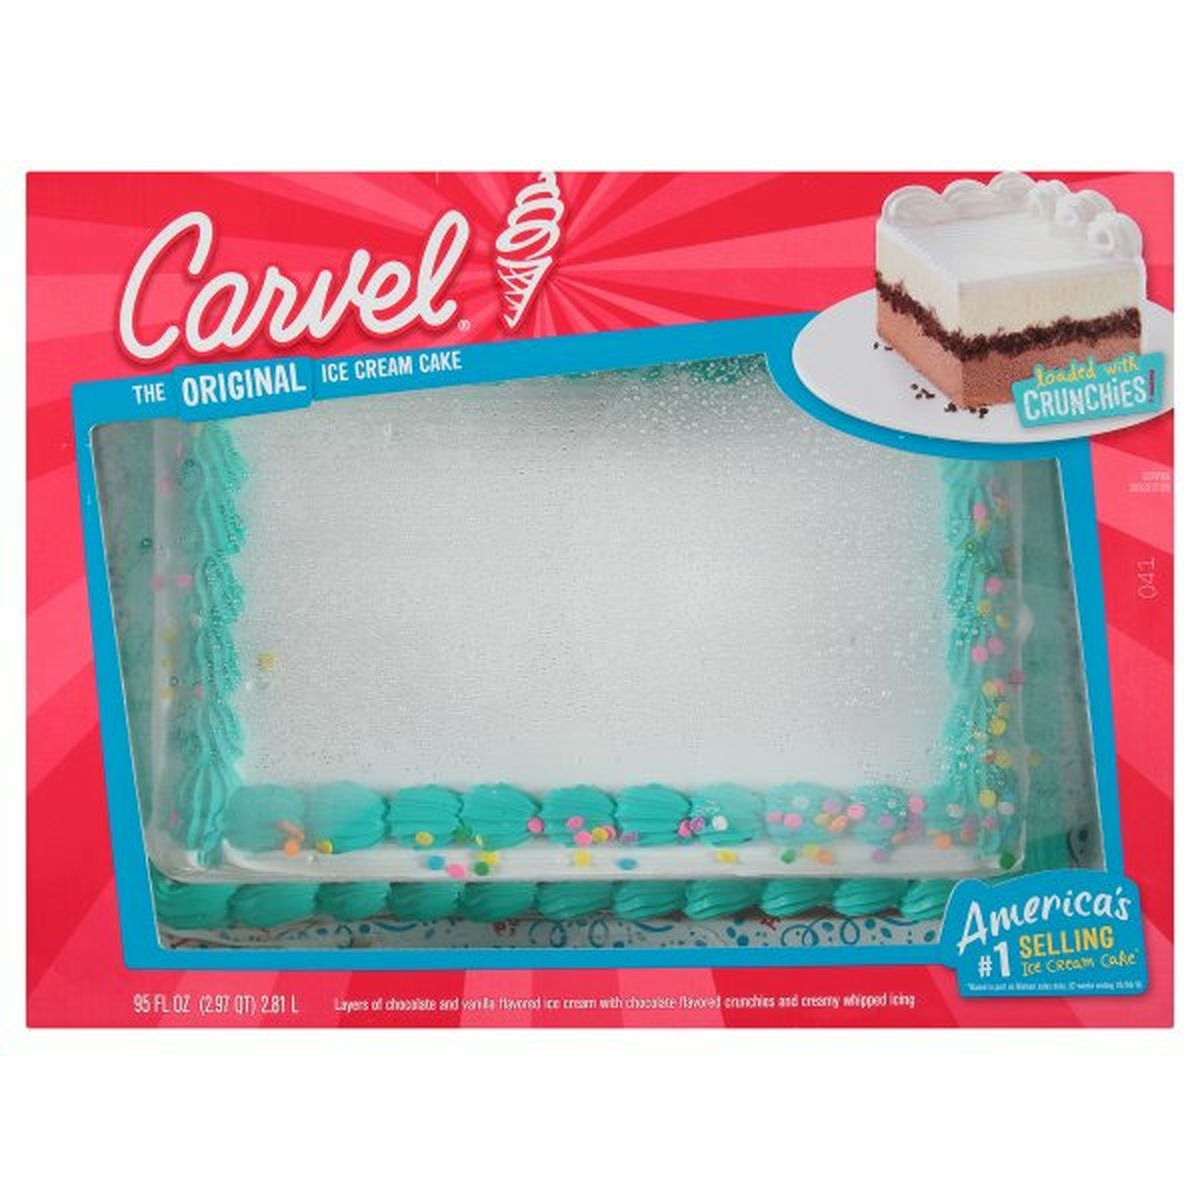 Calories in Carvel Ice Cream Cake, The Original